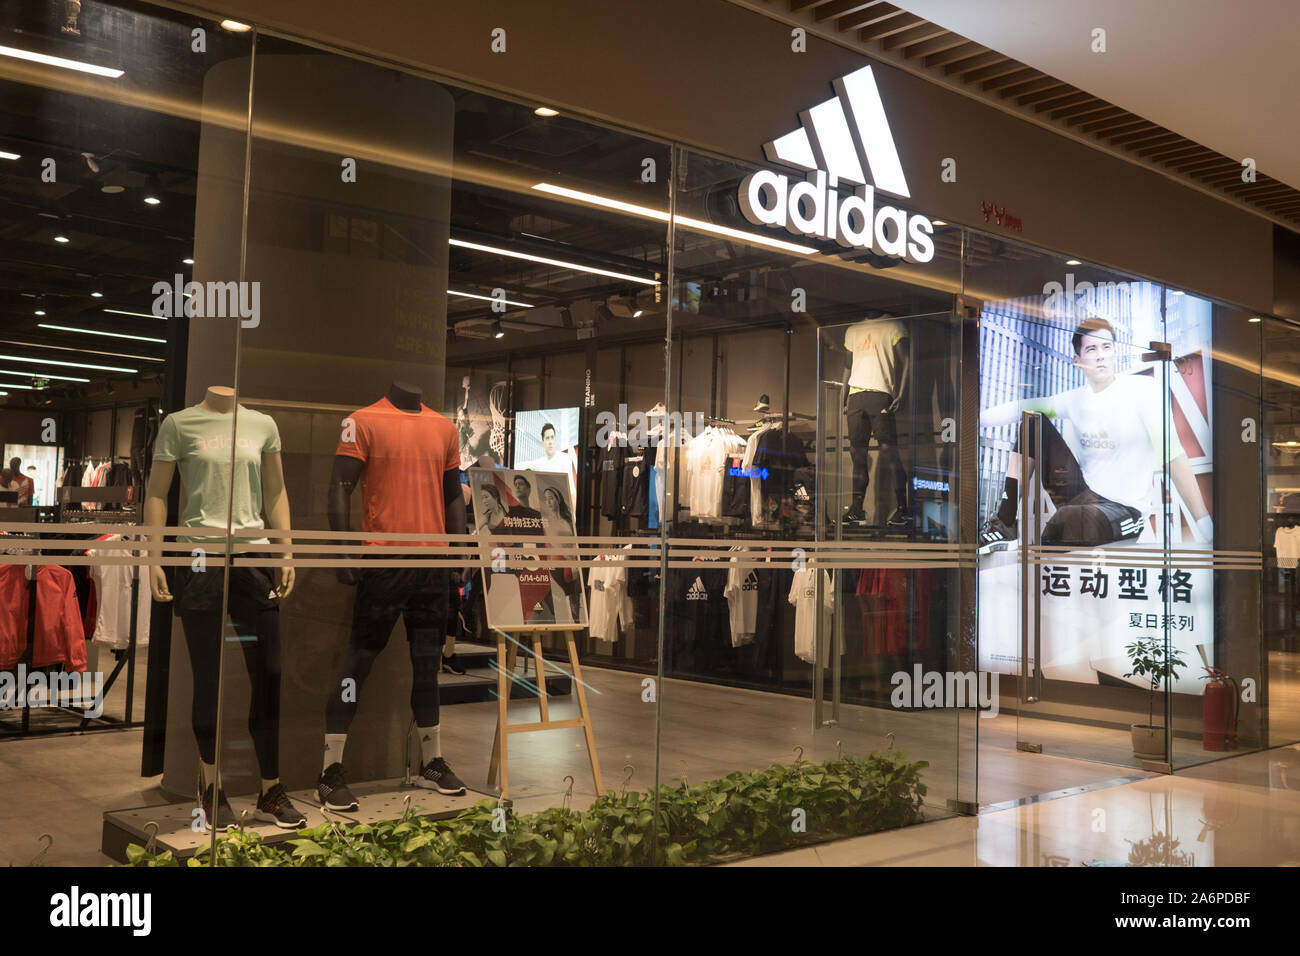 ADIDAS en China: la fachada de la tienda durante una venta especial, Esta famosa marca alemana hace ropa de popular, China 17 de junio de 2019 Fotografía de - Alamy